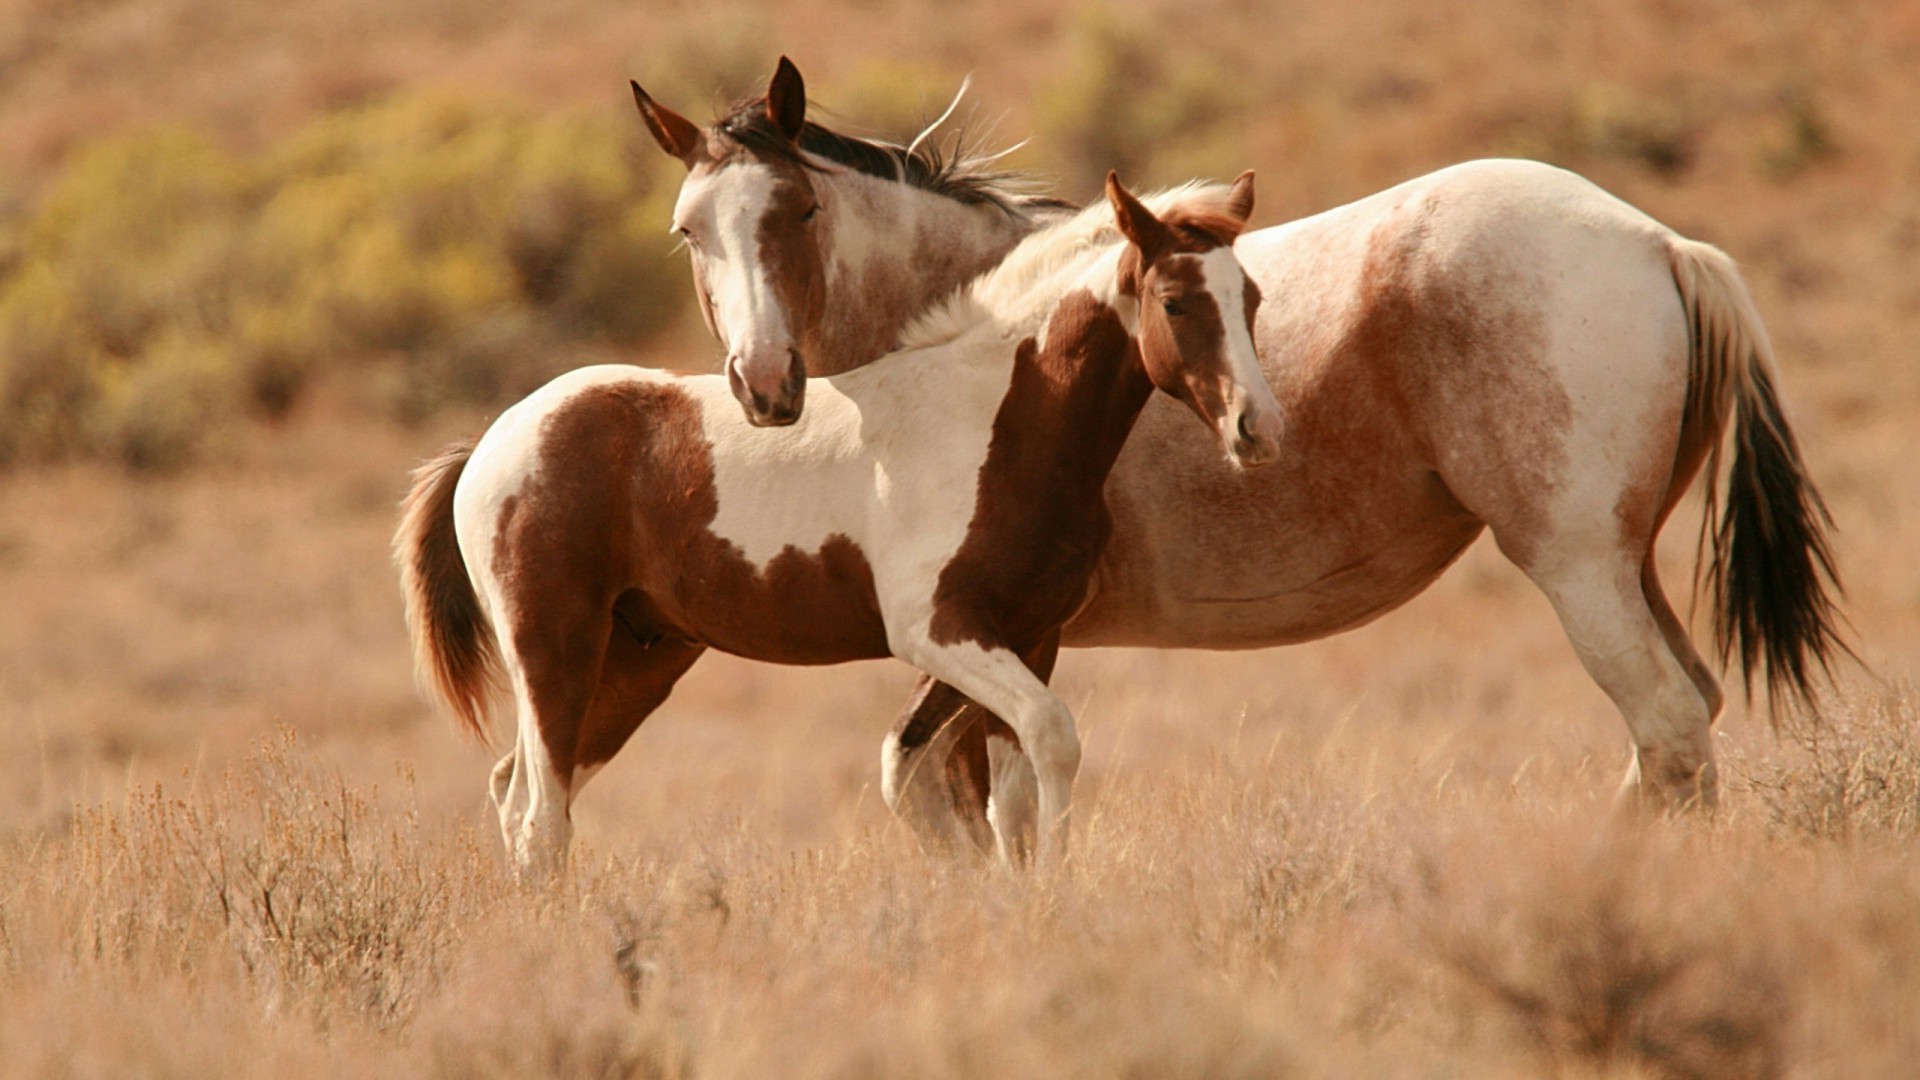 лошади конница млекопитающее маре животное коневодство лошадь ферма трава жеребец мане пастбище сенокос жеребенок поле пастбища конный каштан дикой природы живыми животными пони